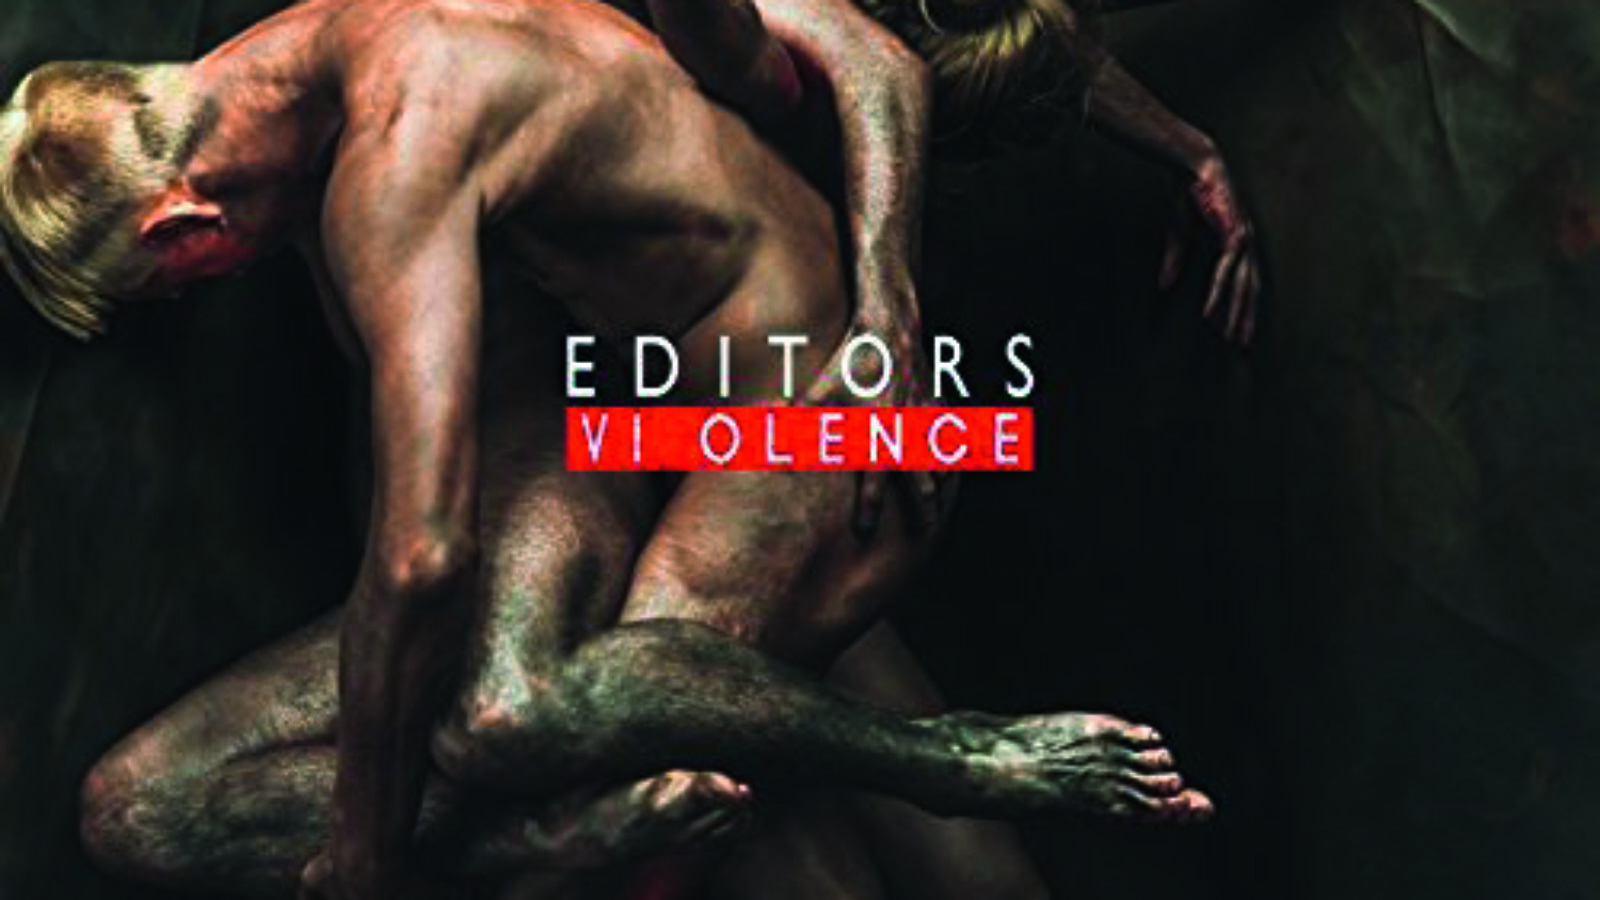 Editors Violence